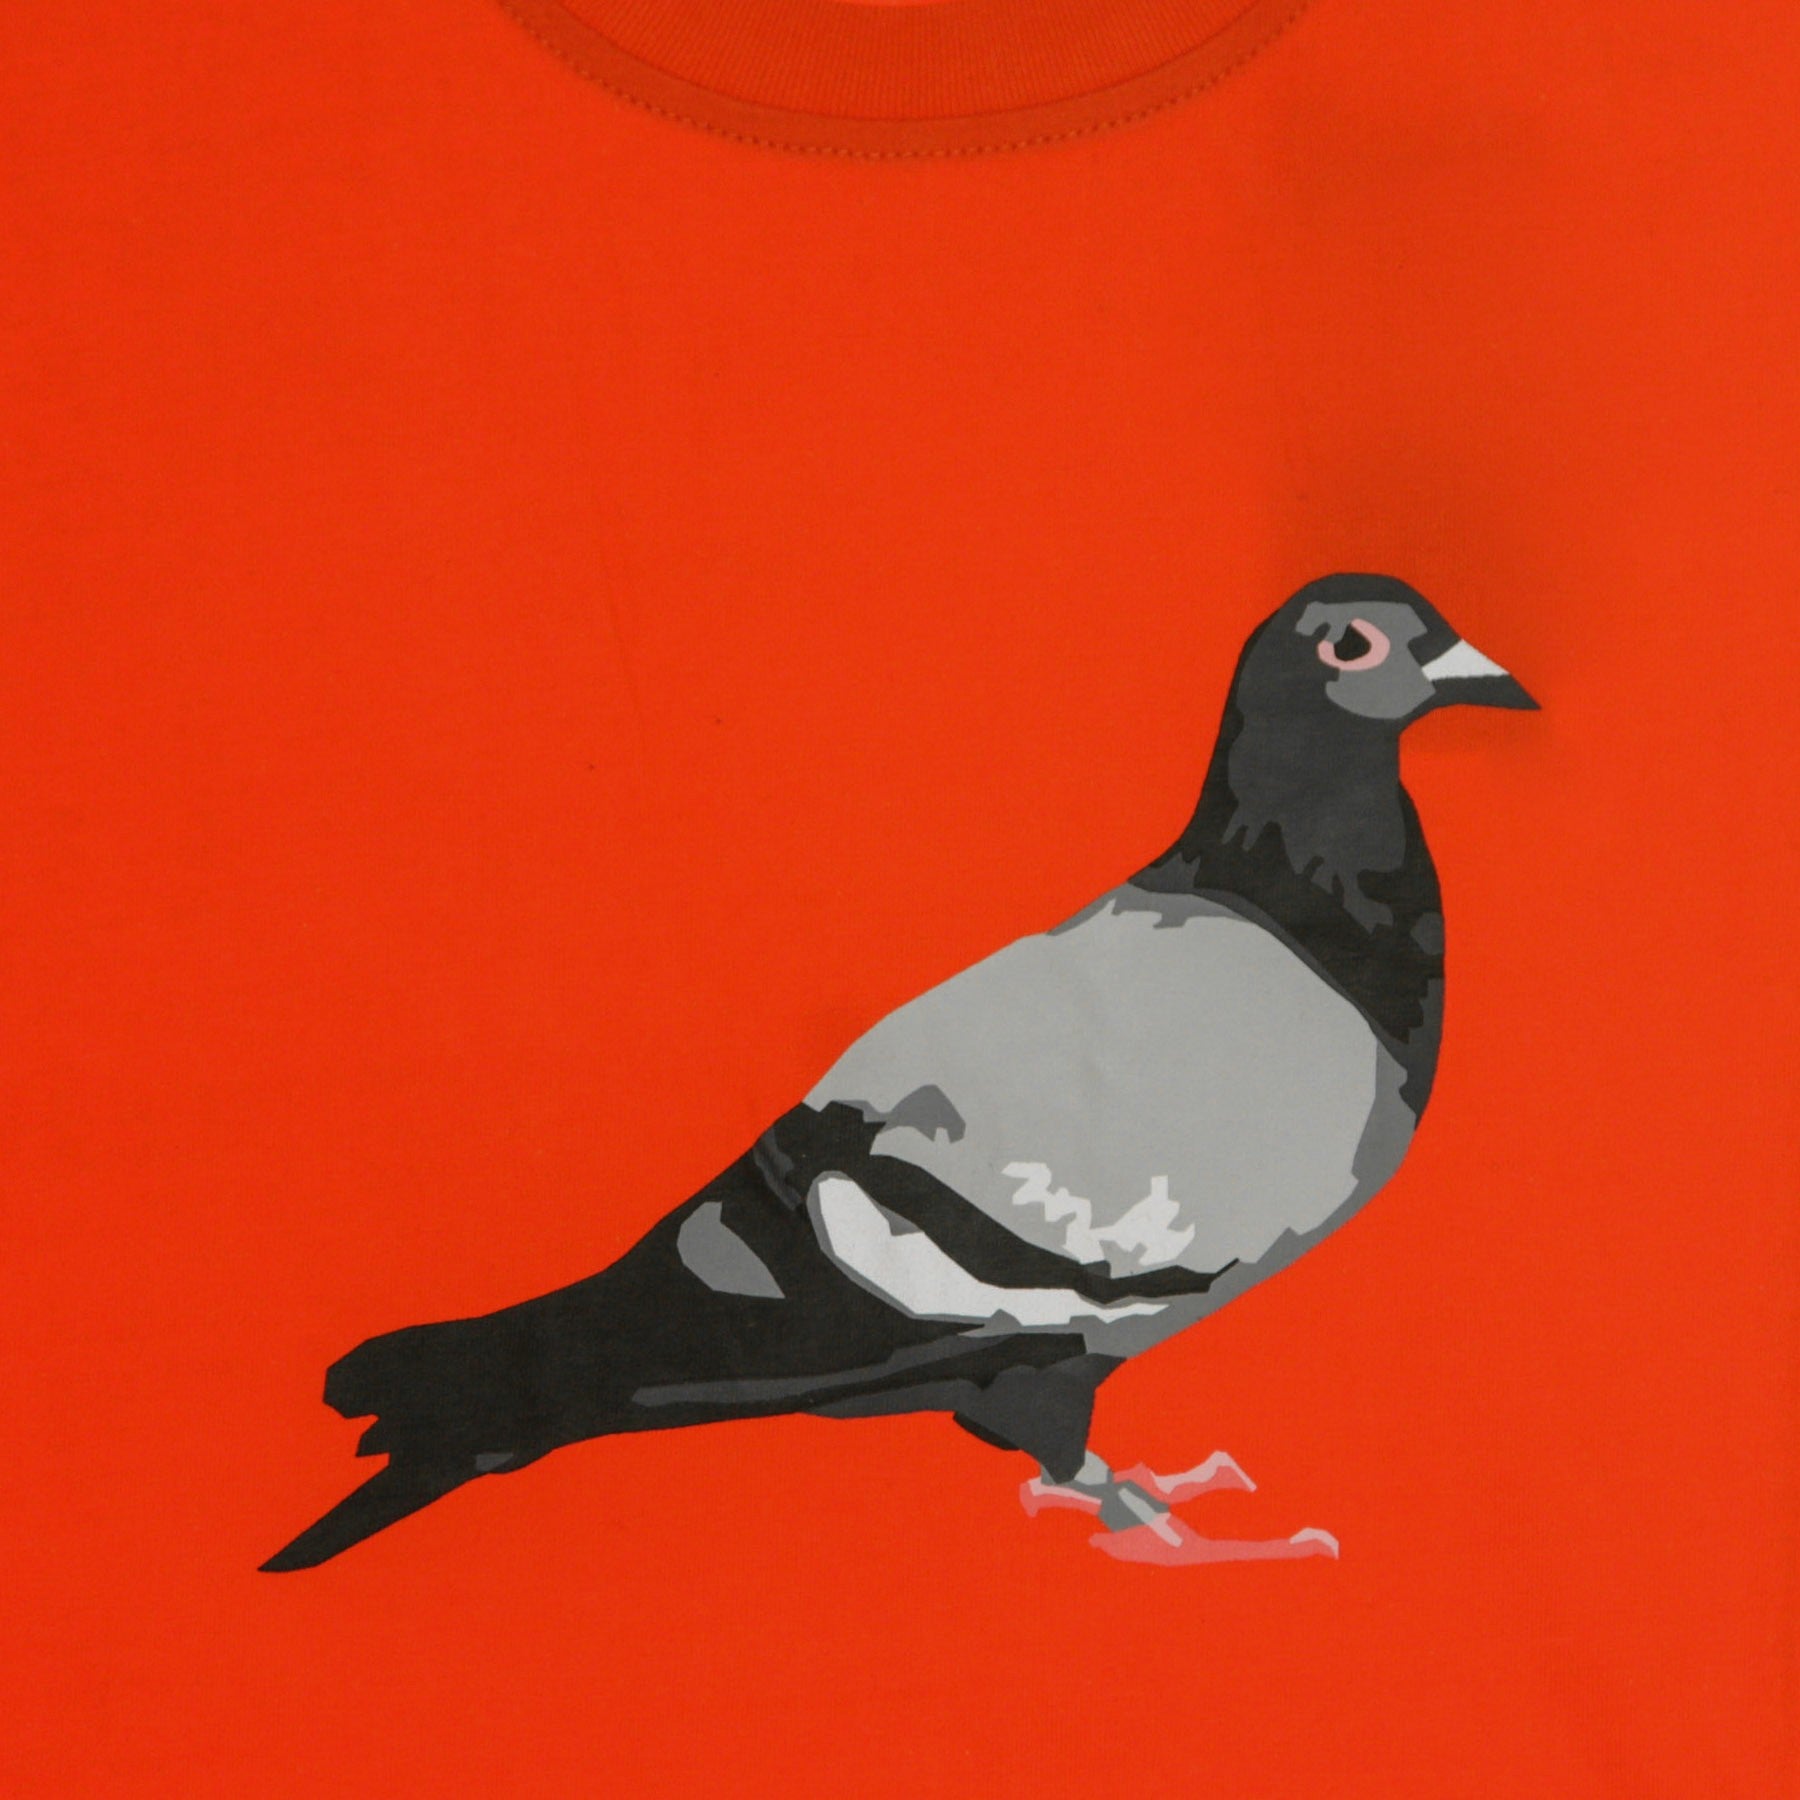 Men's T-Shirt Pigeon Logo Tee Red